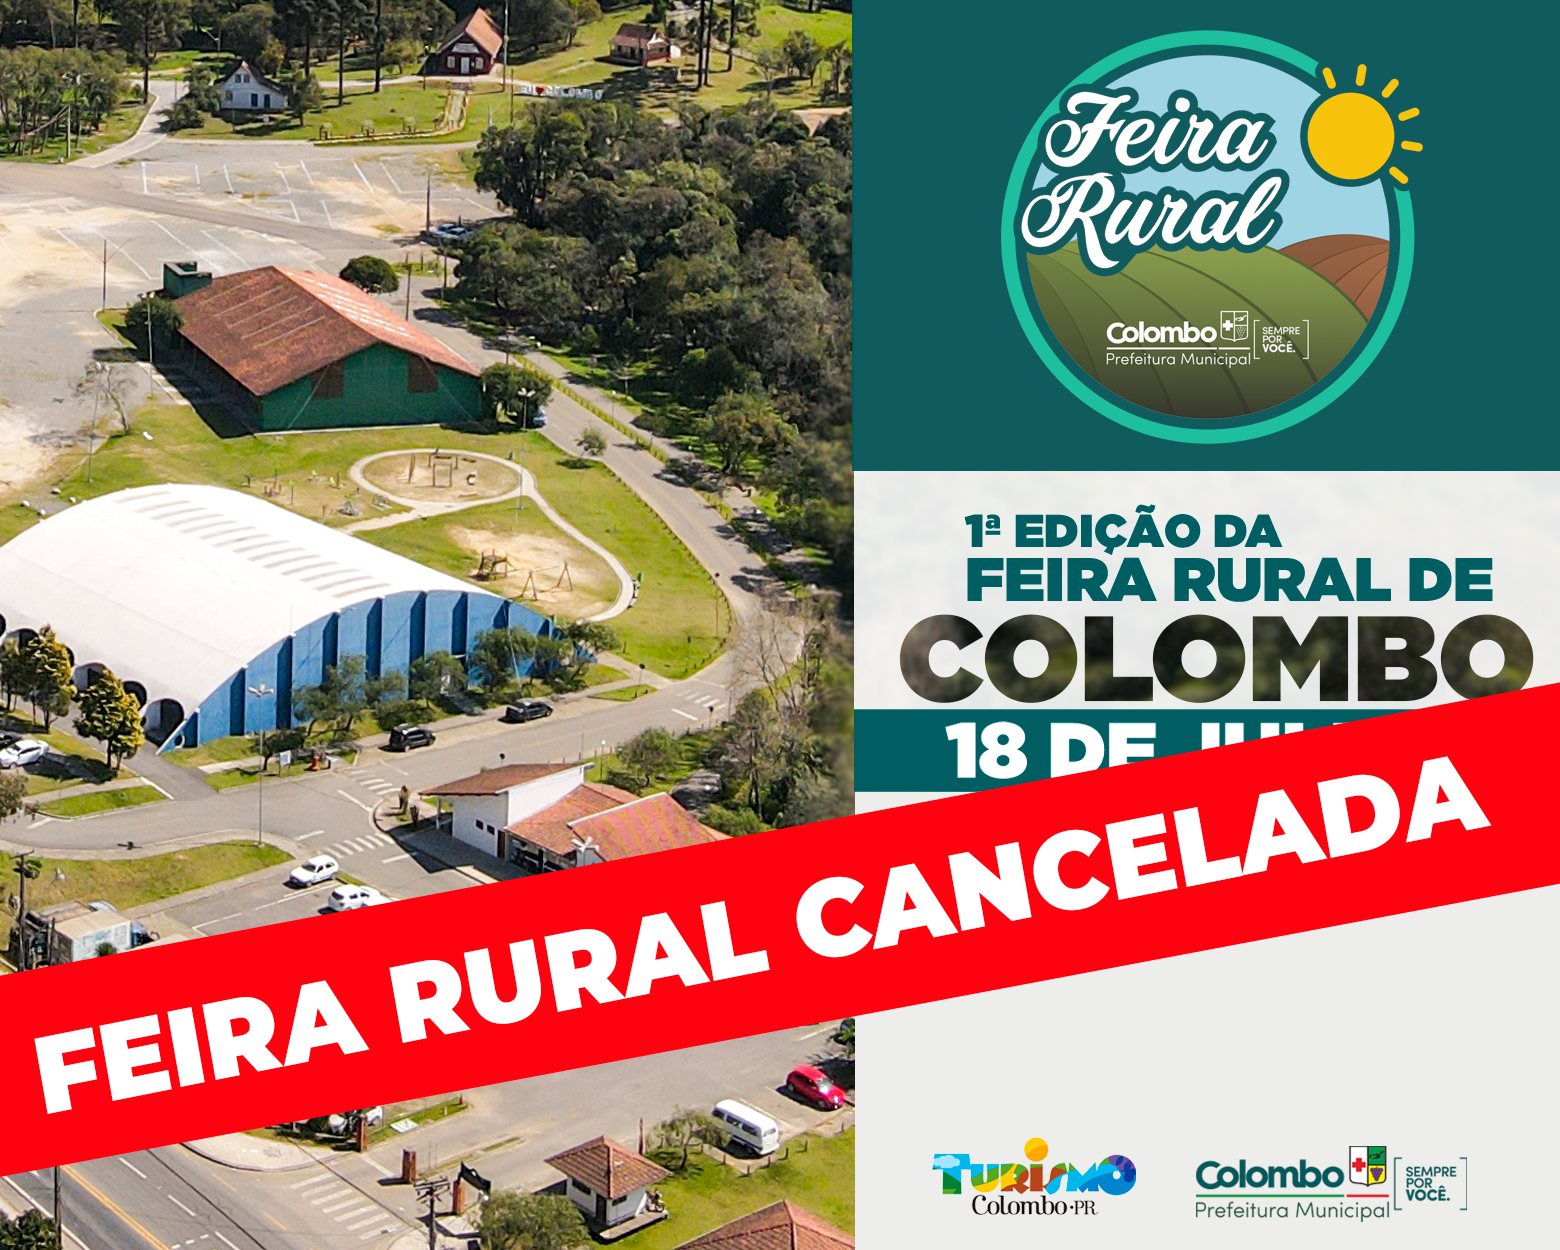 Feira Rural de Colombo é cancelada